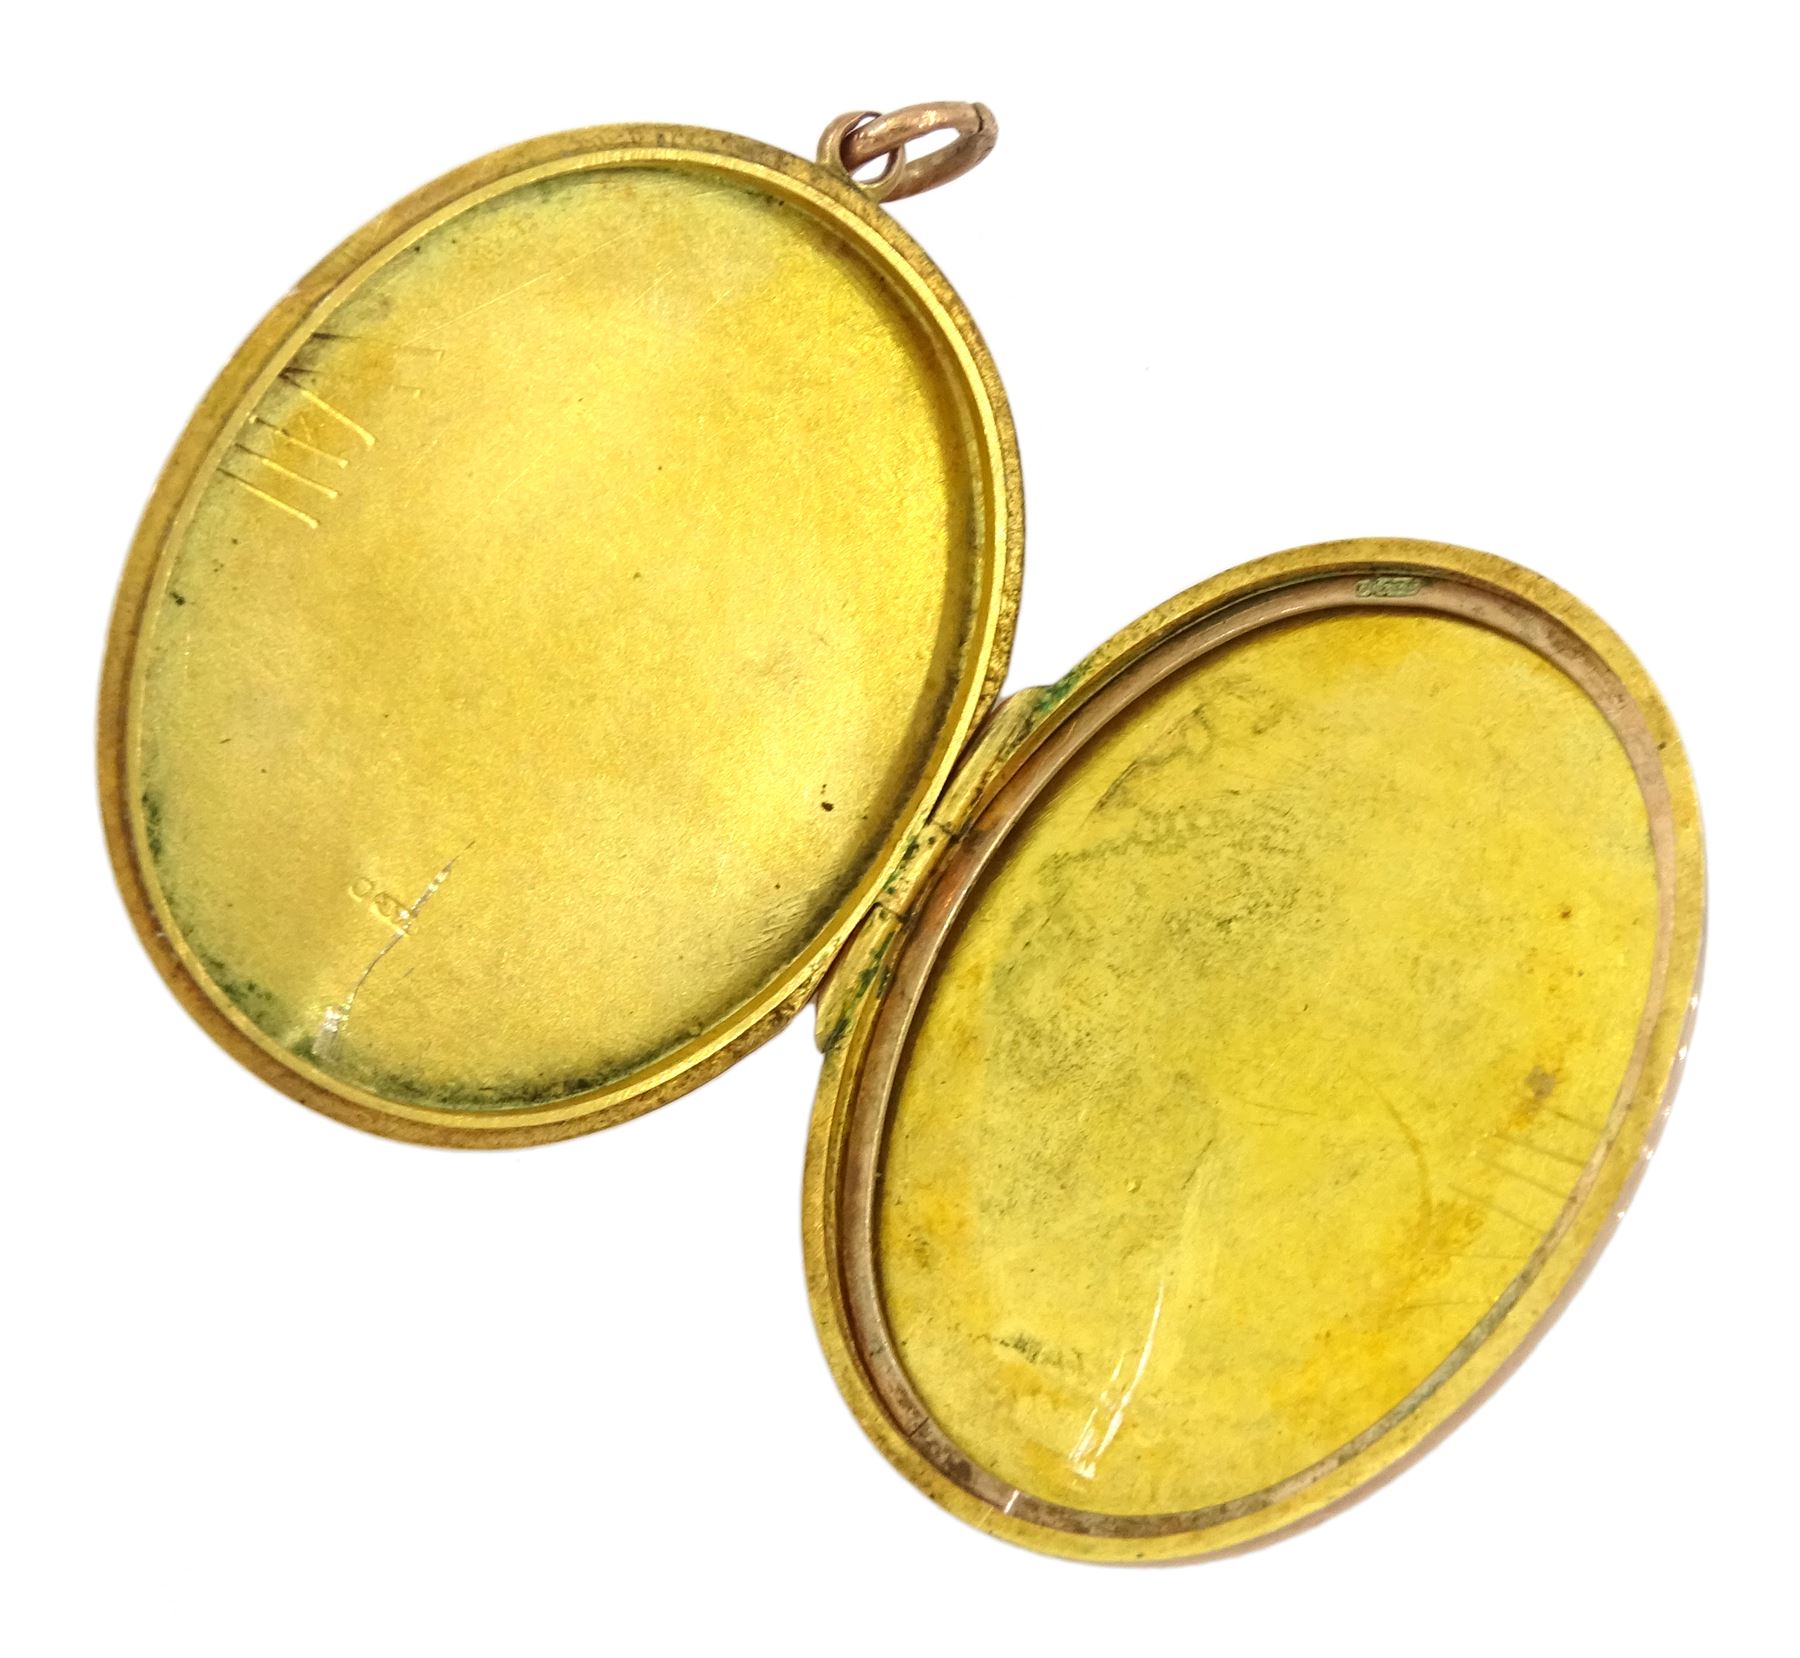 9ct rose gold locket pendant - Image 2 of 2